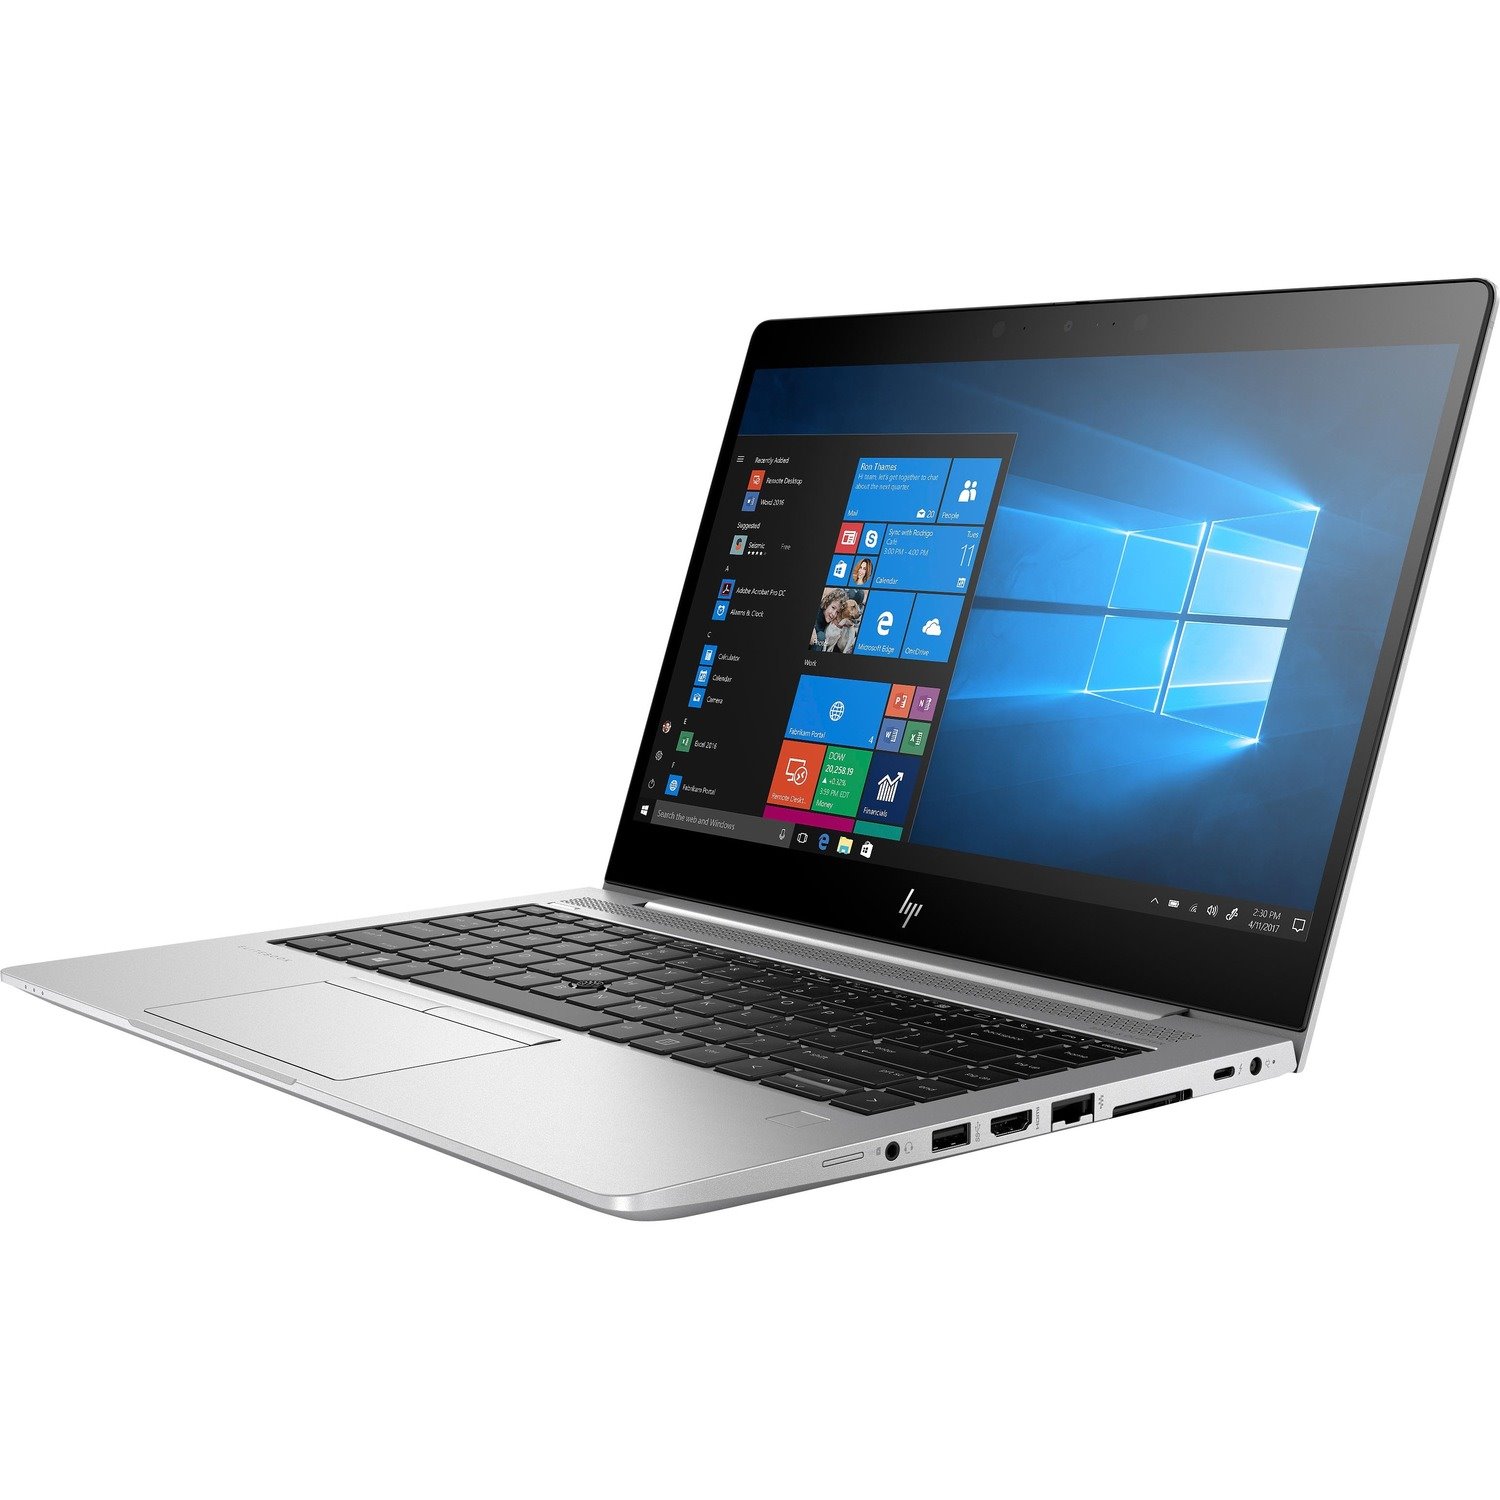 HP EliteBook 840 G6 35.6 cm (14") Notebook - 1920 x 1080 - Intel Core i5 8th Gen i5-8265U Quad-core (4 Core) 1.60 GHz - 8 GB Total RAM - 256 GB SSD